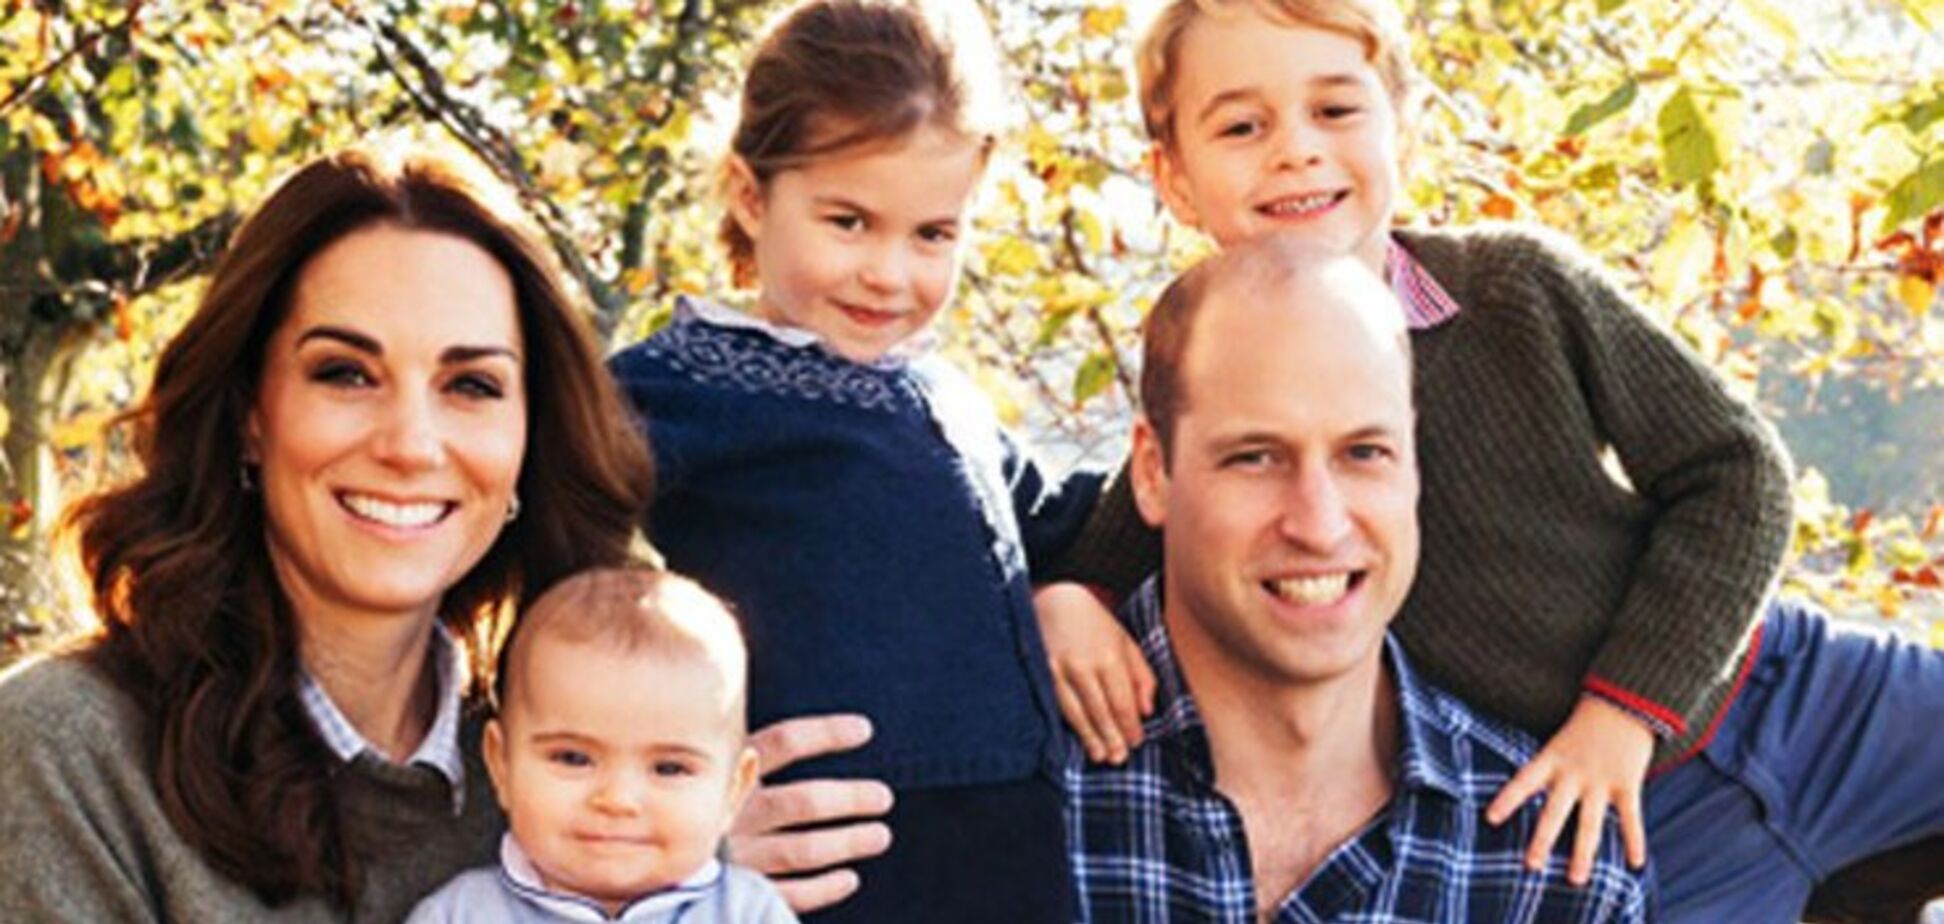 У мережу випадково злили рідкісне фото принца Вільяма та Кейт Міддлтон з дітьми